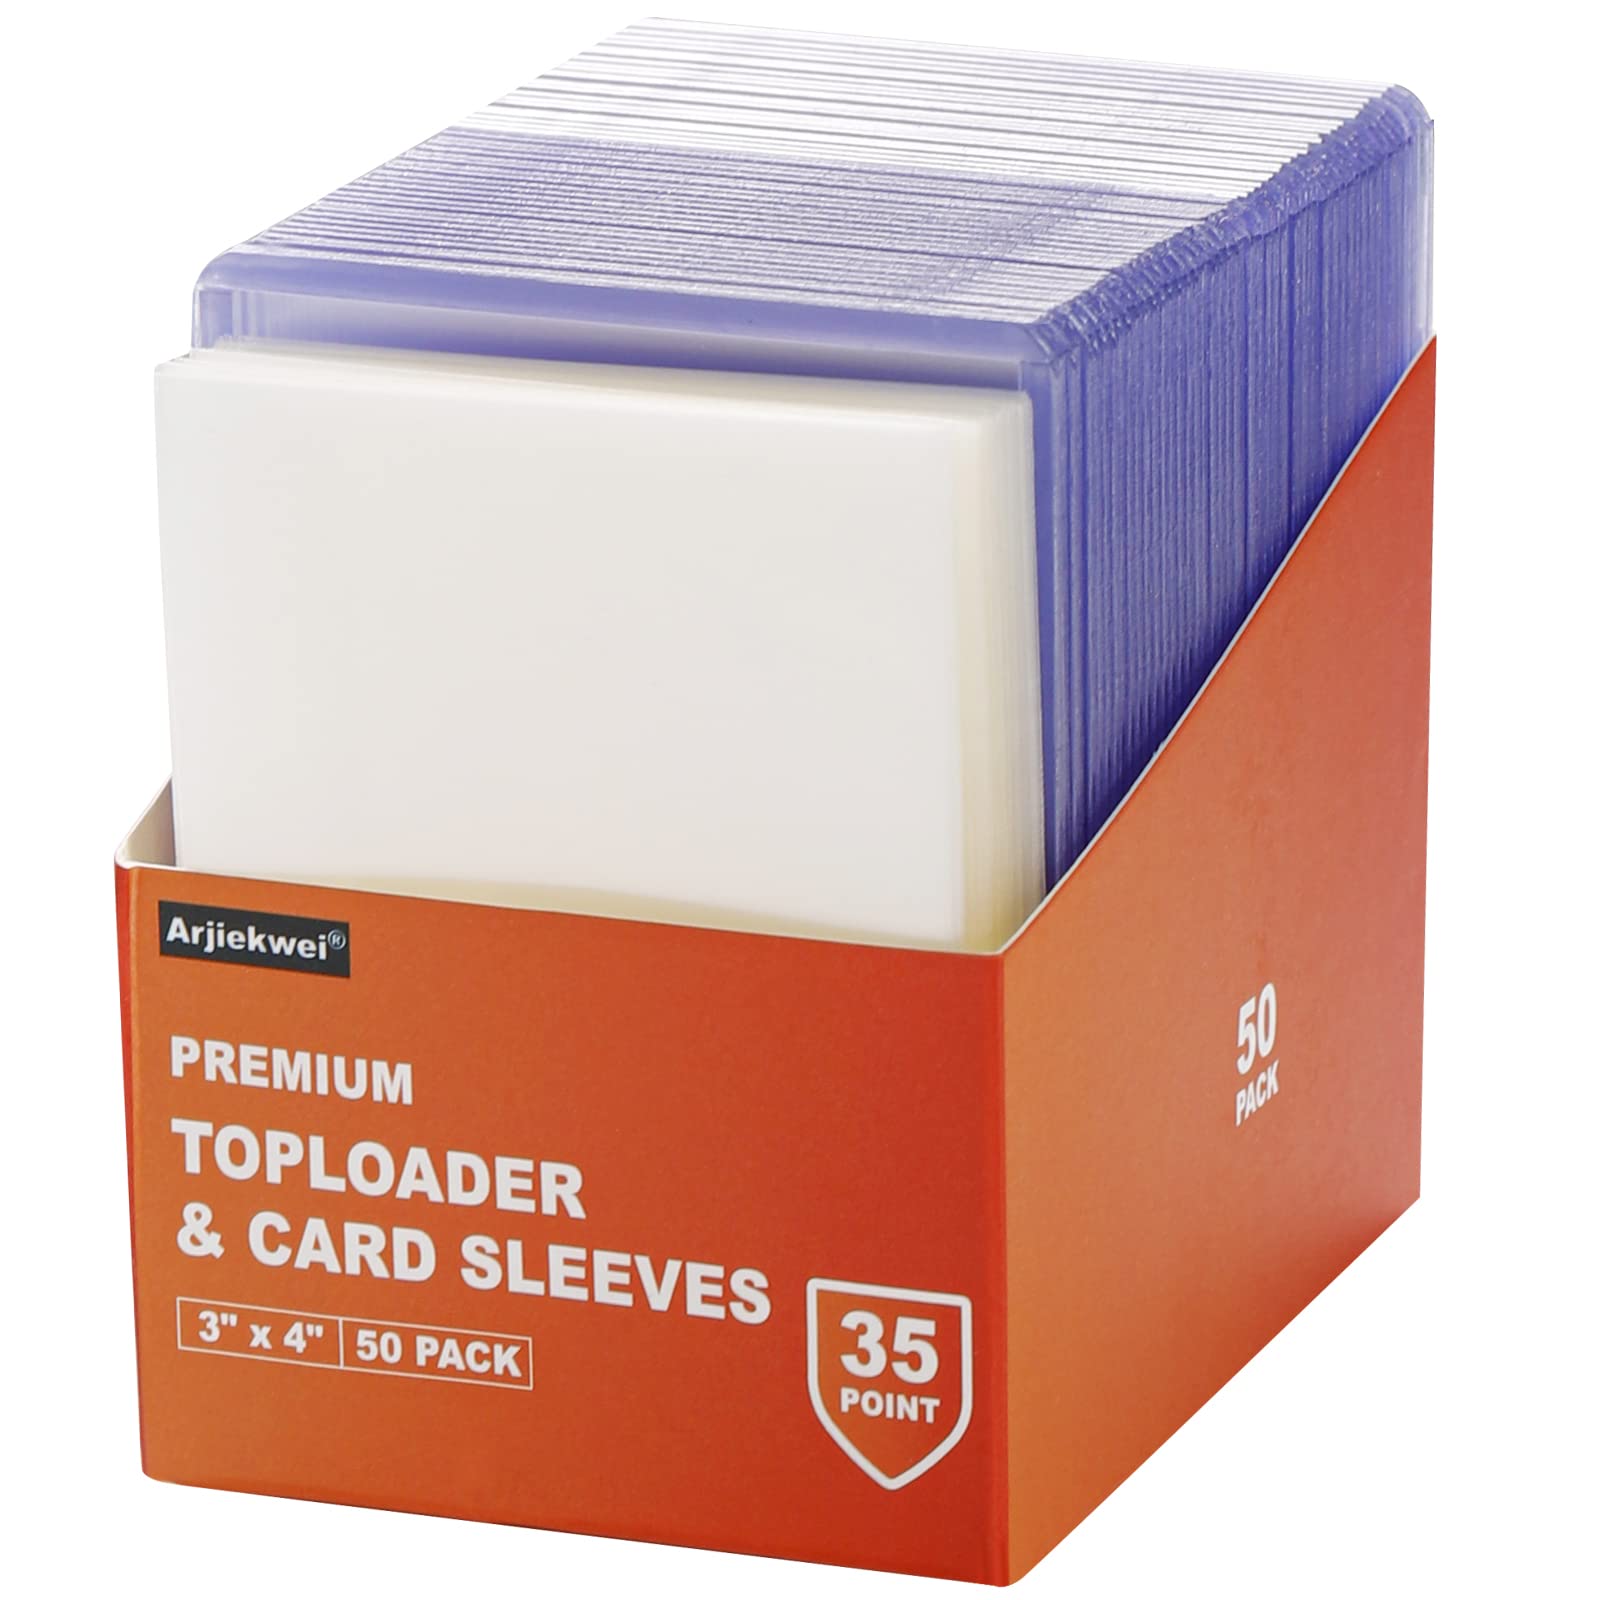 UP - Toploader - 3 x 4 Transparent Regular & Card Sleeves (200)